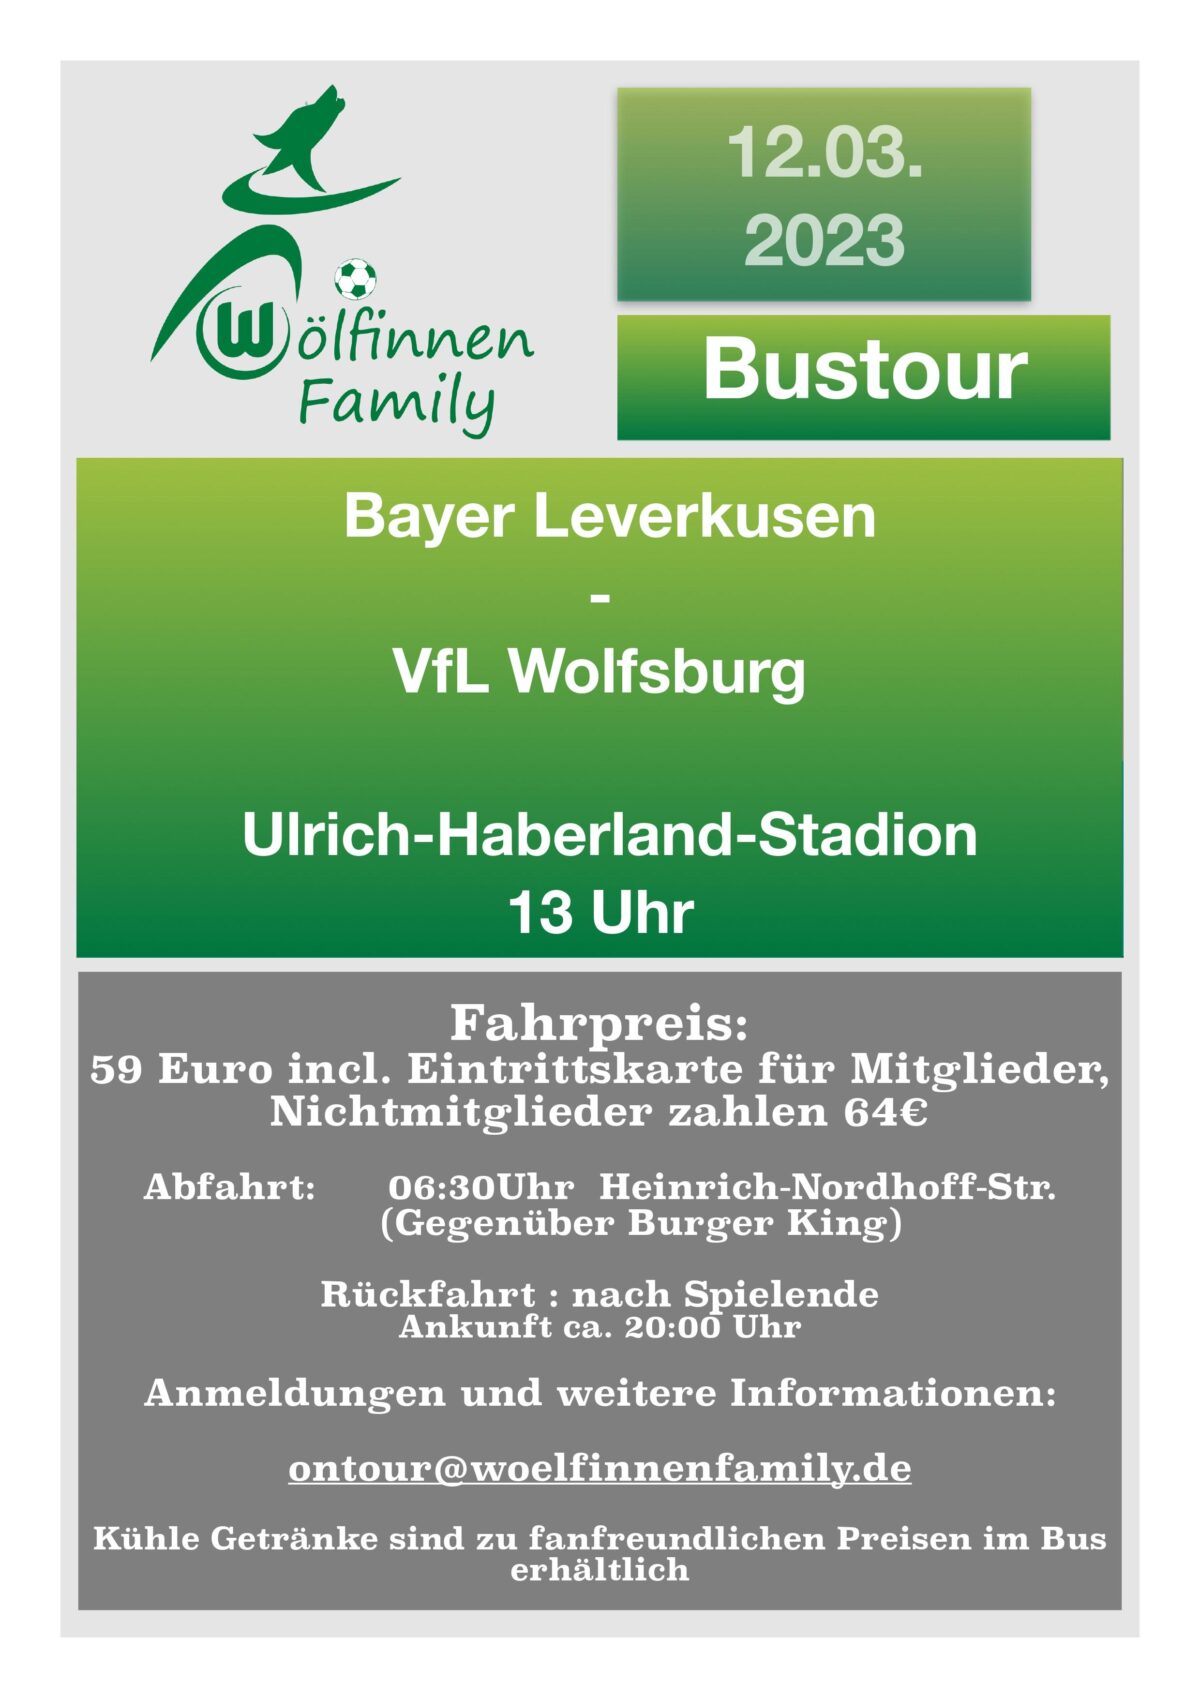 Bustour: Leverkusen – VfL Wolfsburg 12.03.23